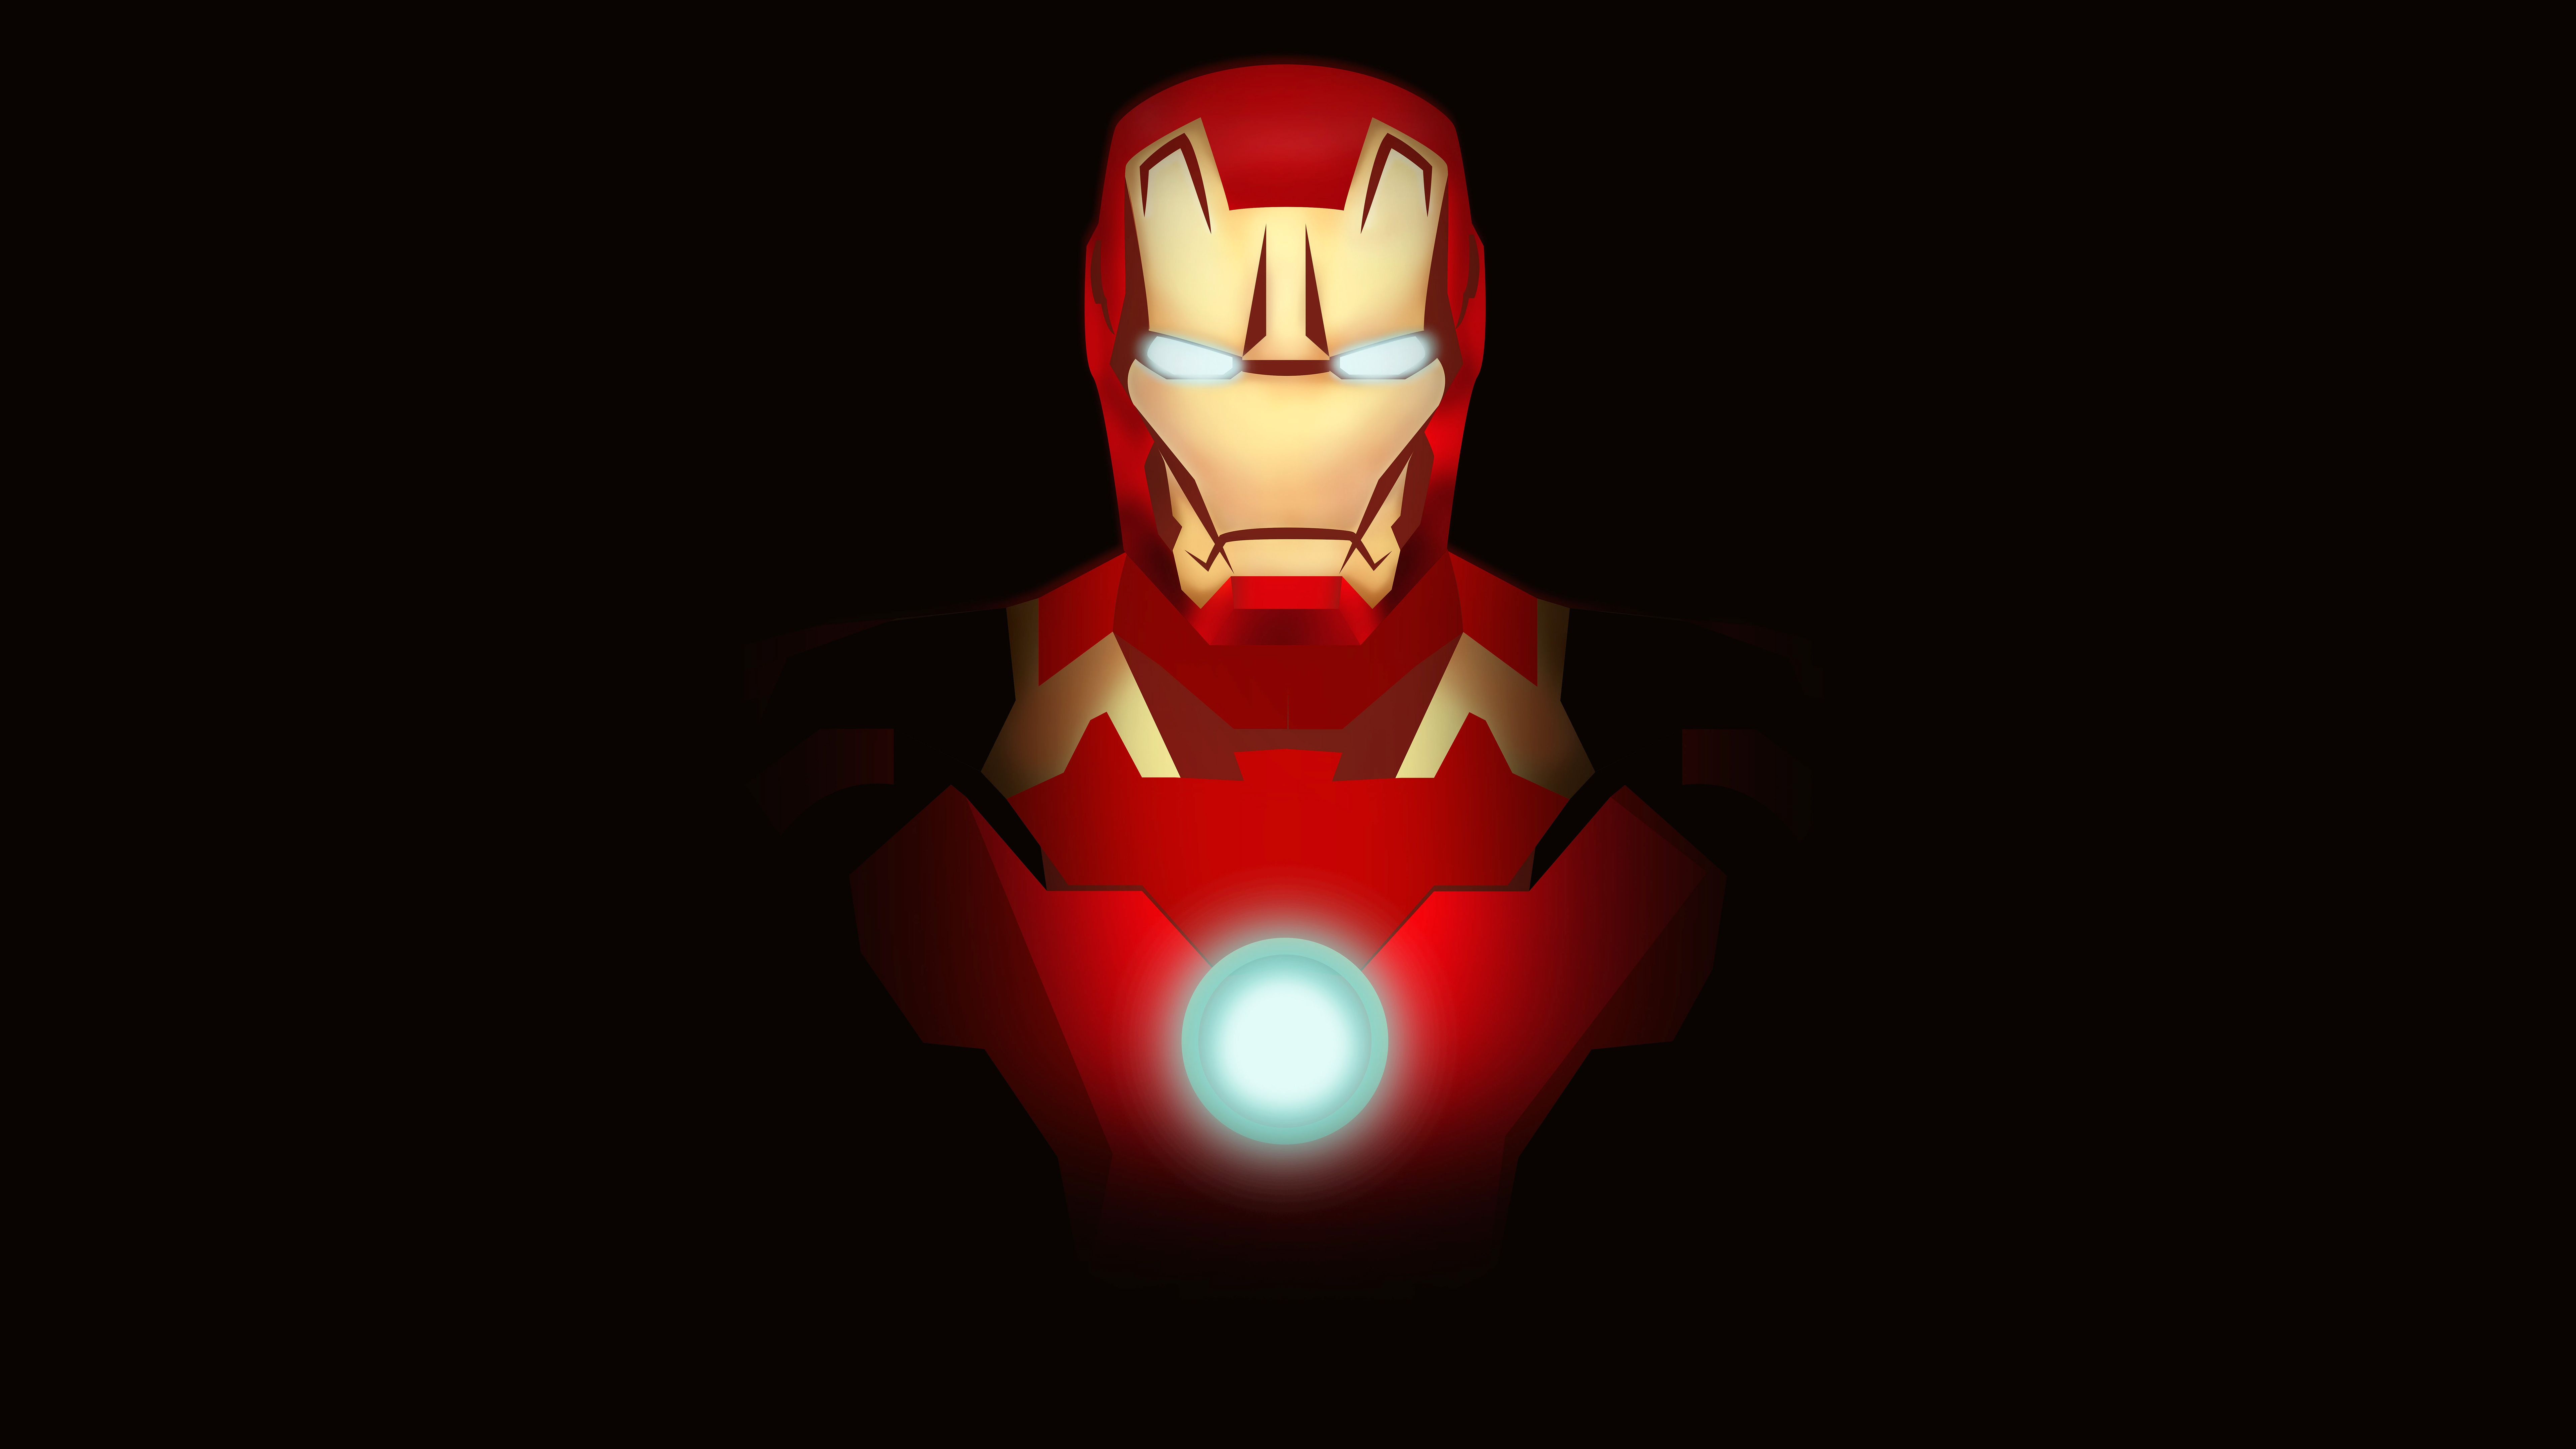 Iron Man Minimal Fan art 4K 8K